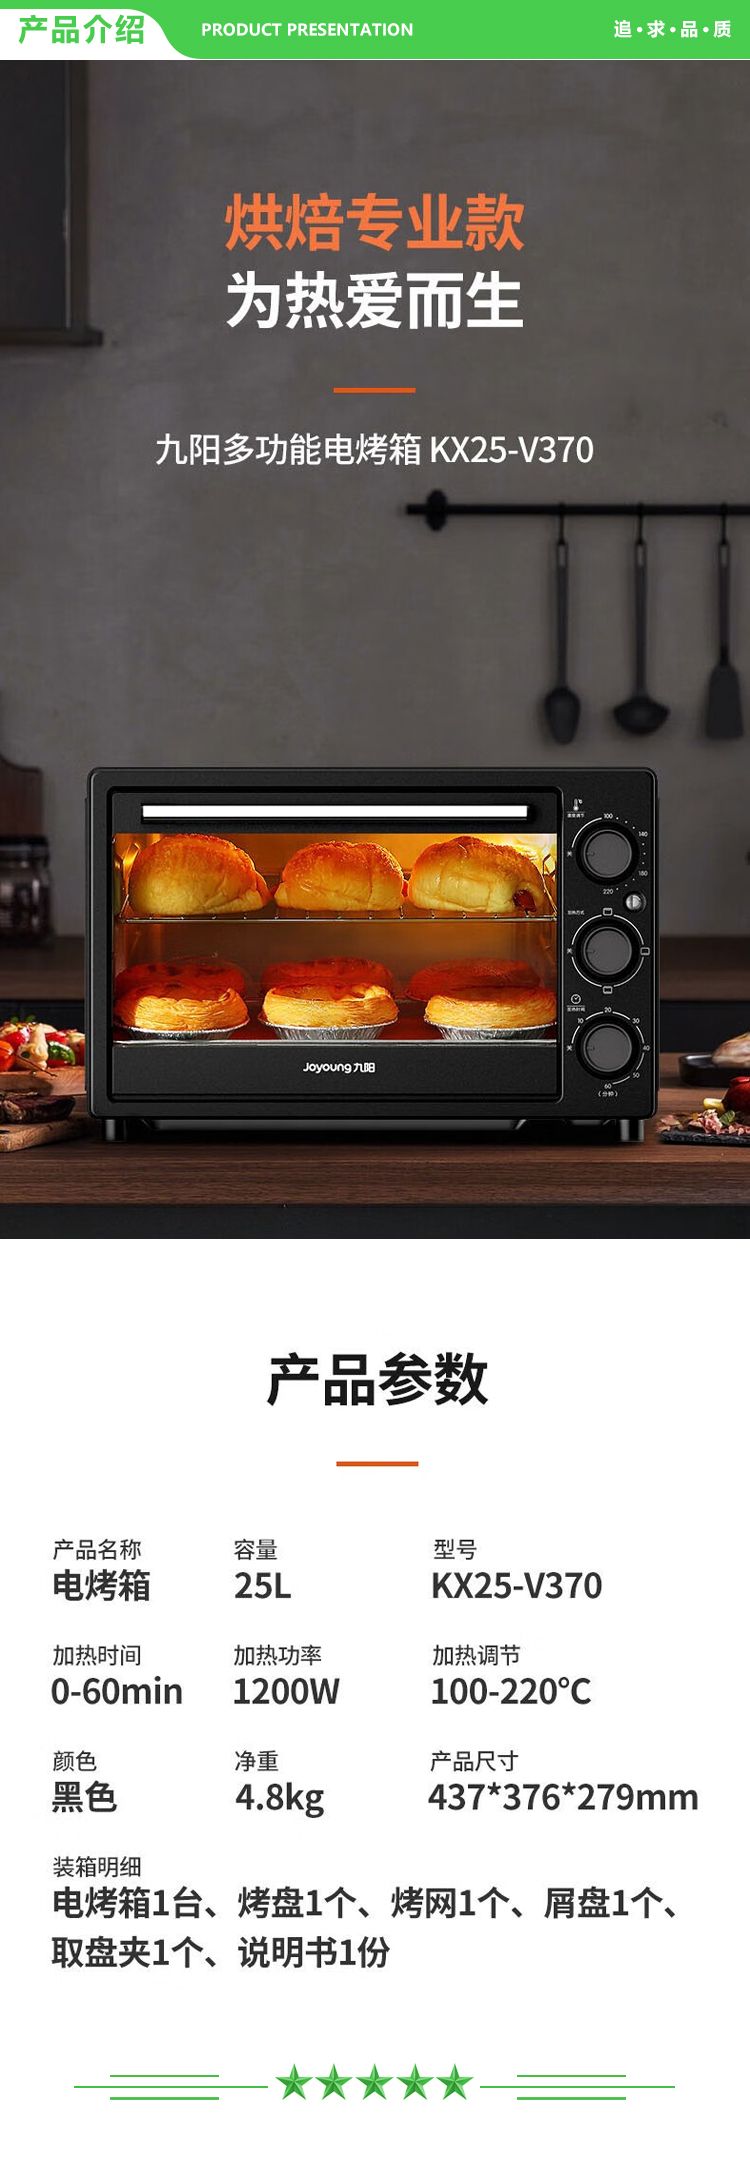 九阳 Joyoung KX25-V370 电烤箱 多功能烤箱.jpg